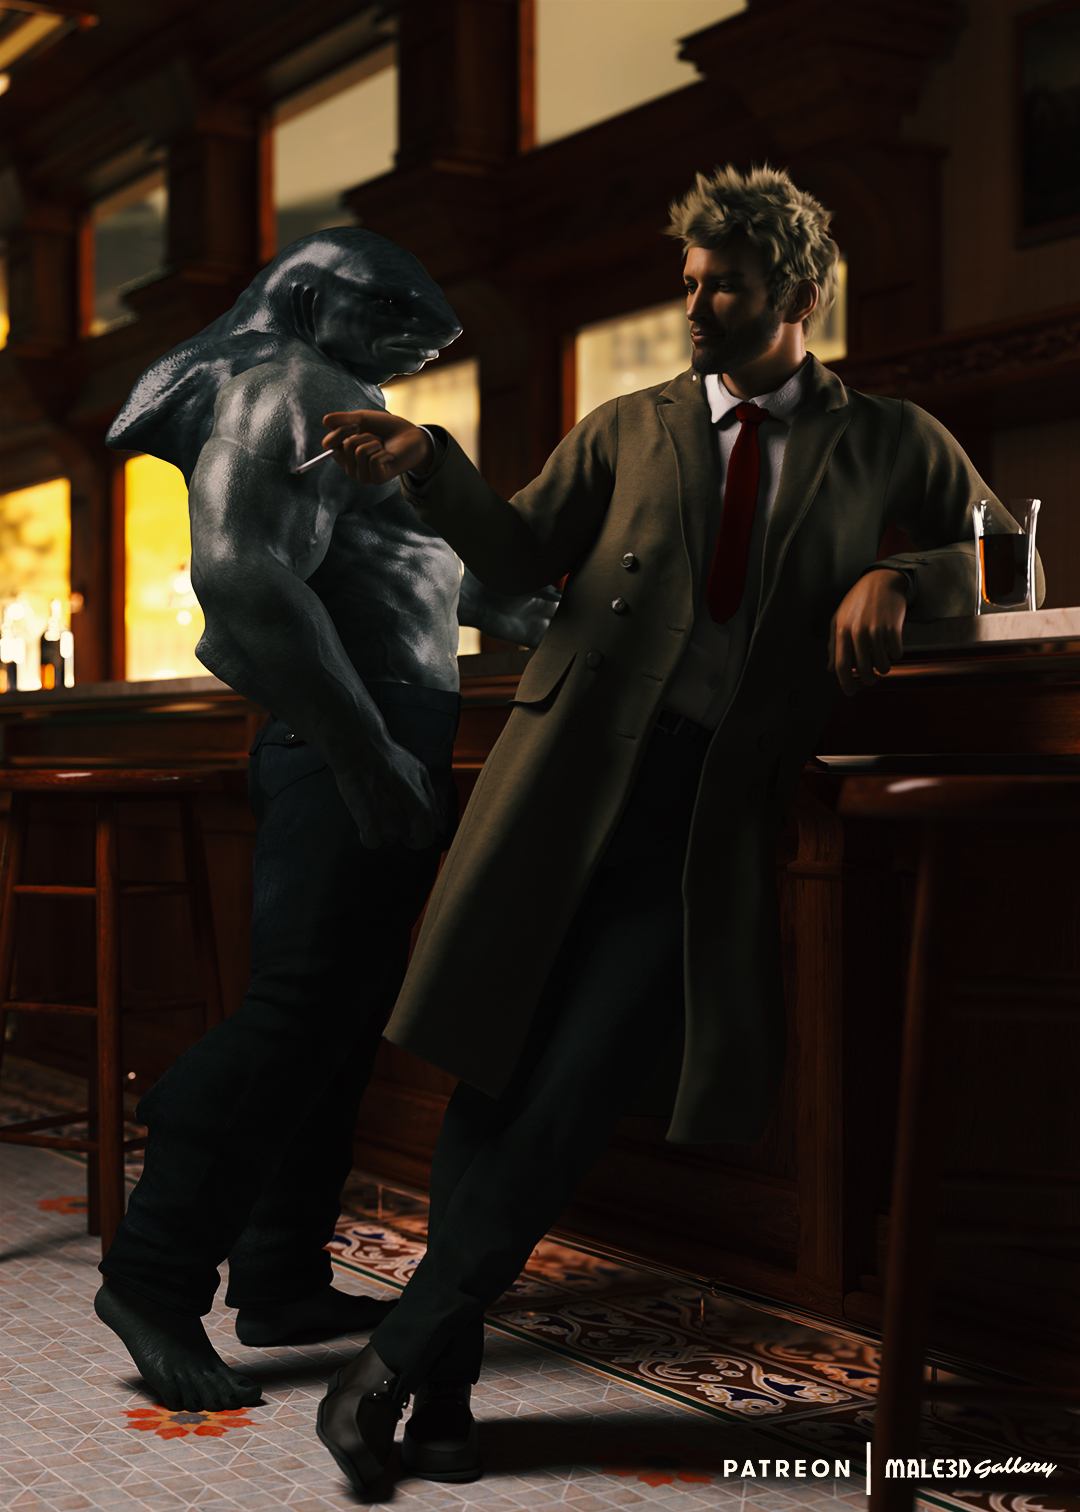 John Constantine and King Shark at the bar